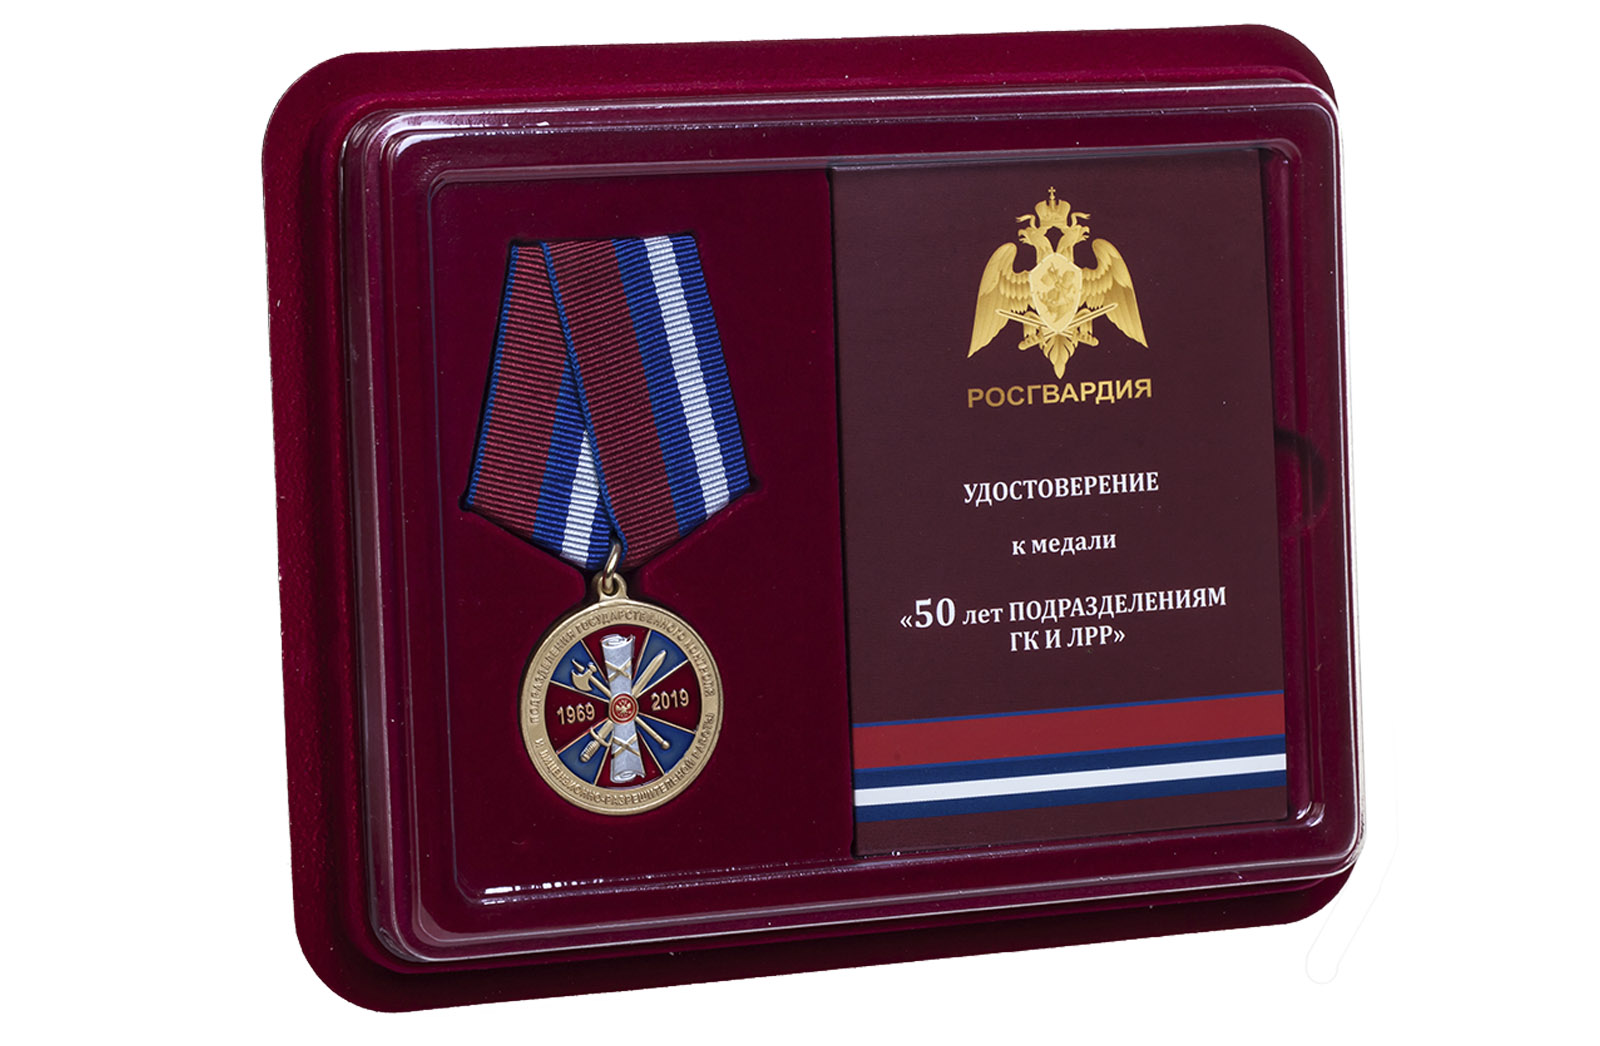 Купить медаль Росгвардии 50 лет подразделениям ГК и ЛРР с доставкой в ваш город